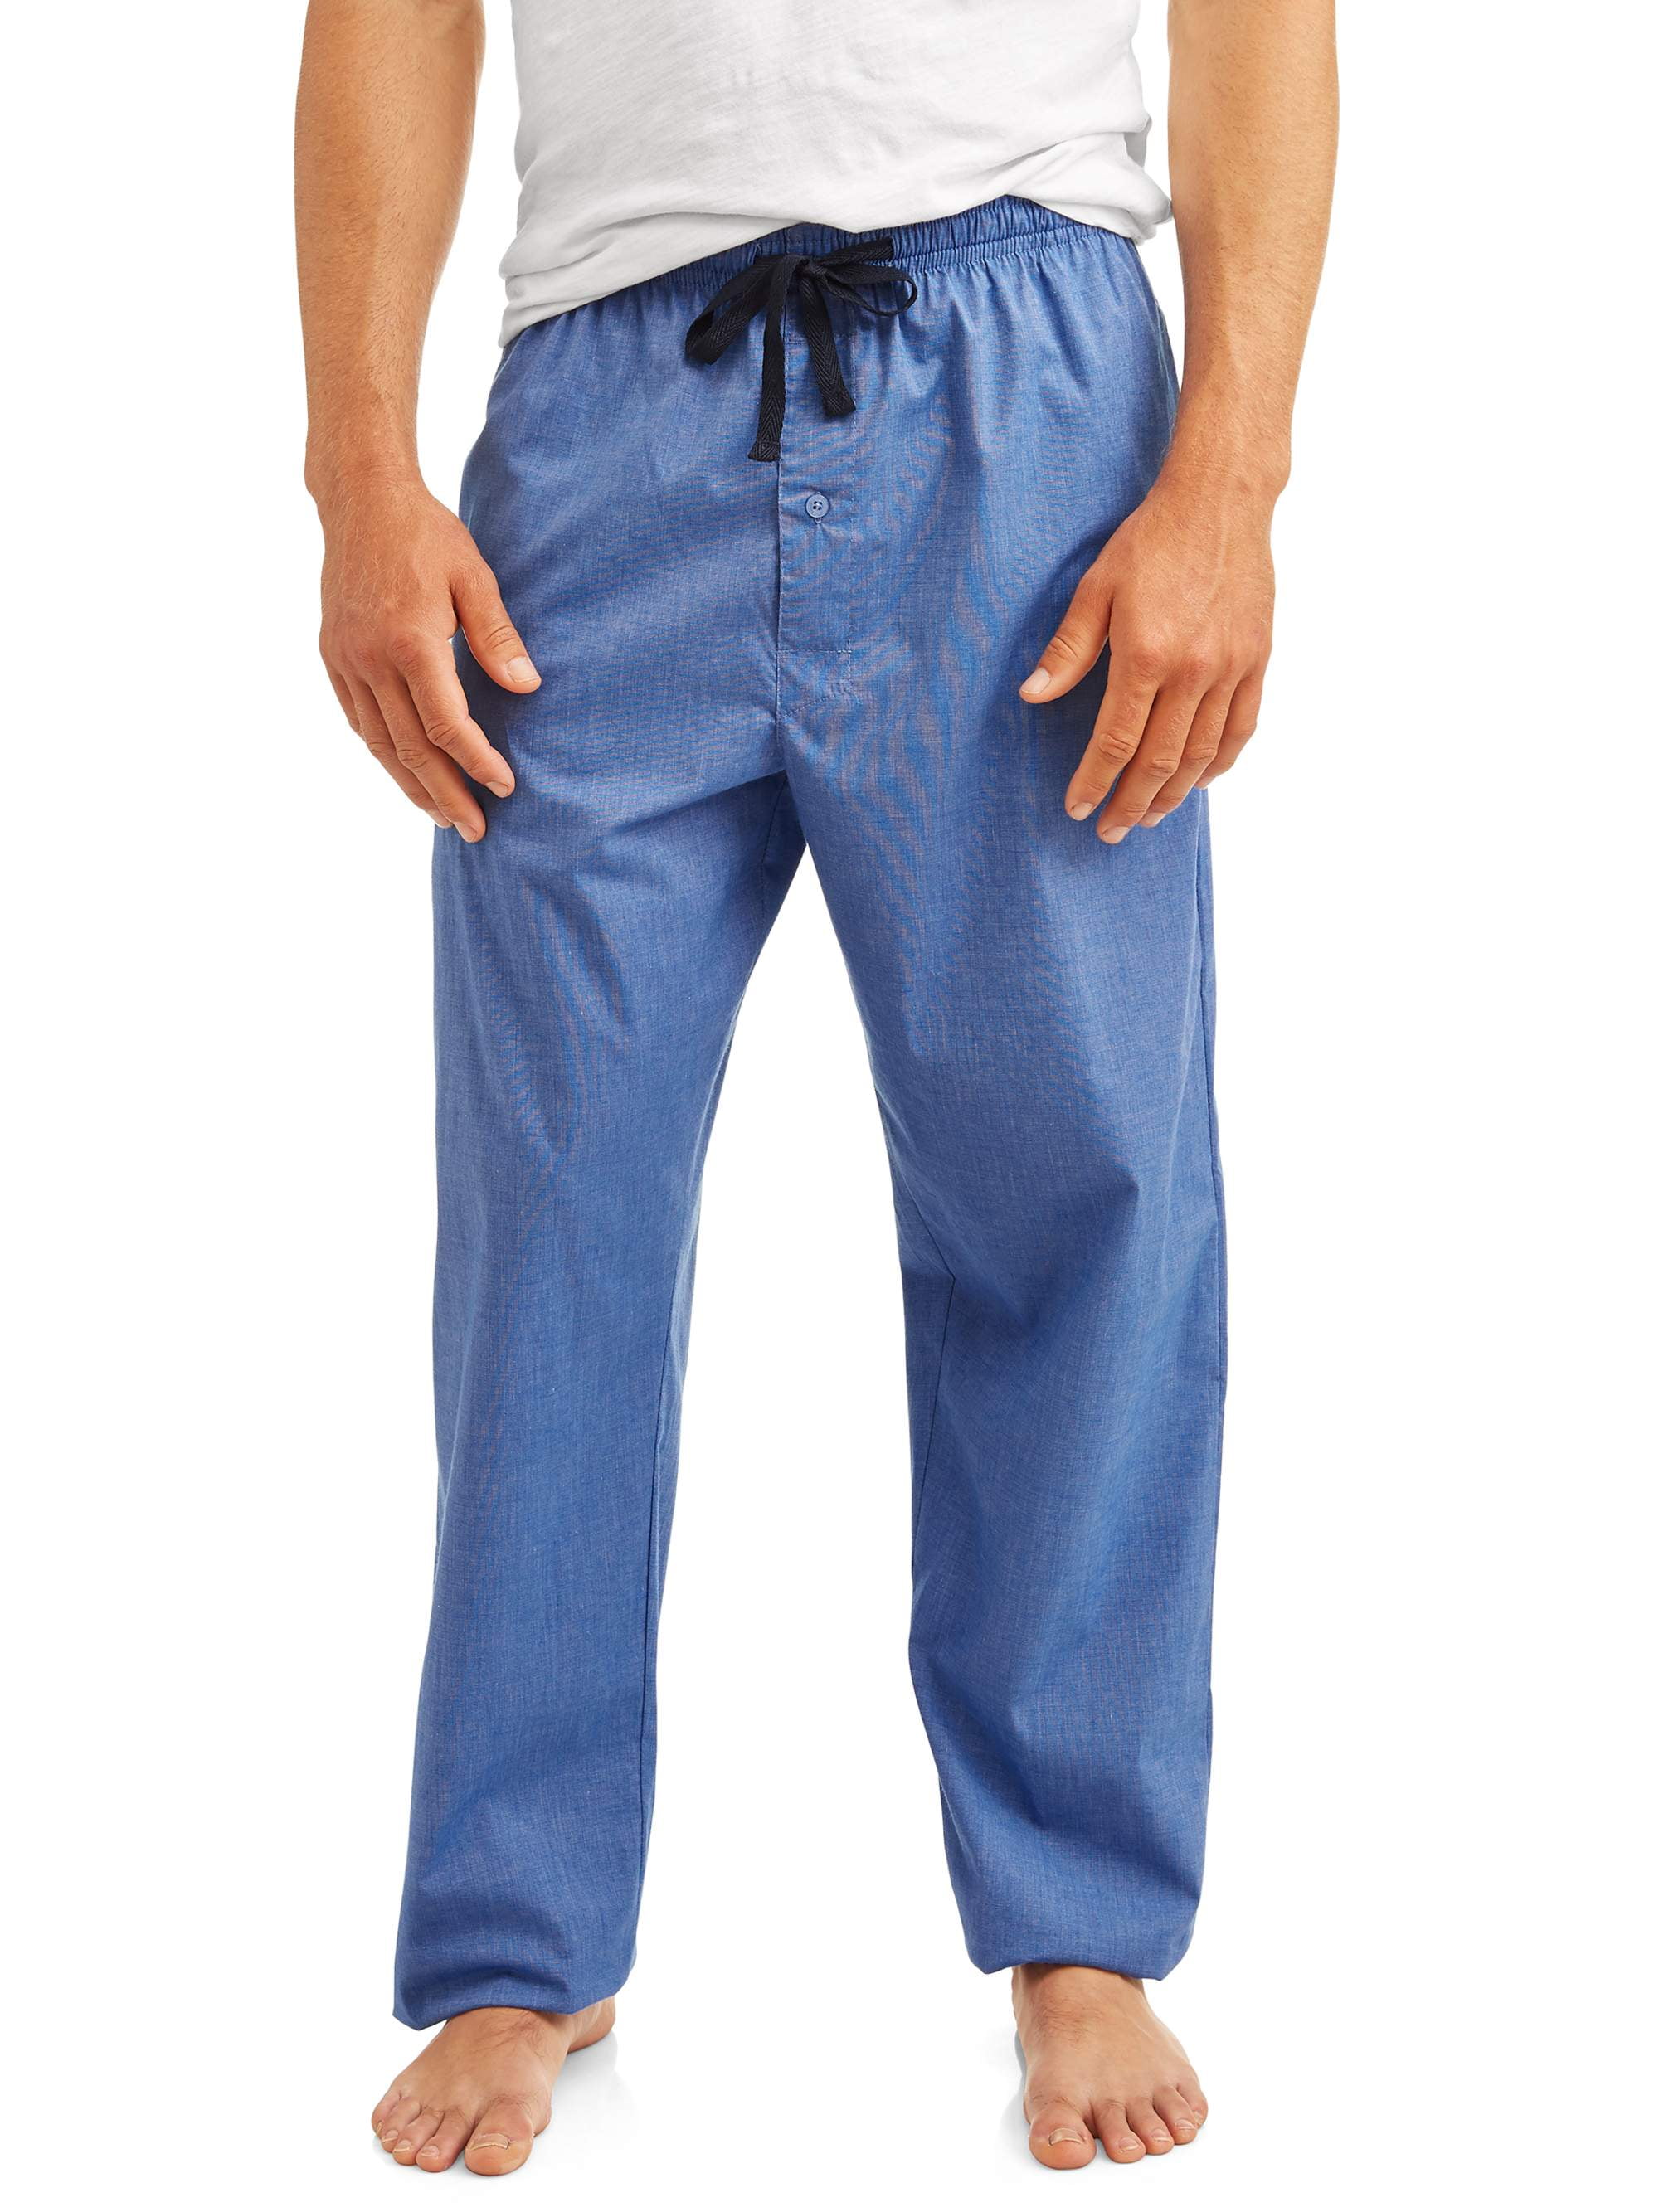 Hanes Men's and Big Men's Woven Stretch Pajama Pants - Walmart.com